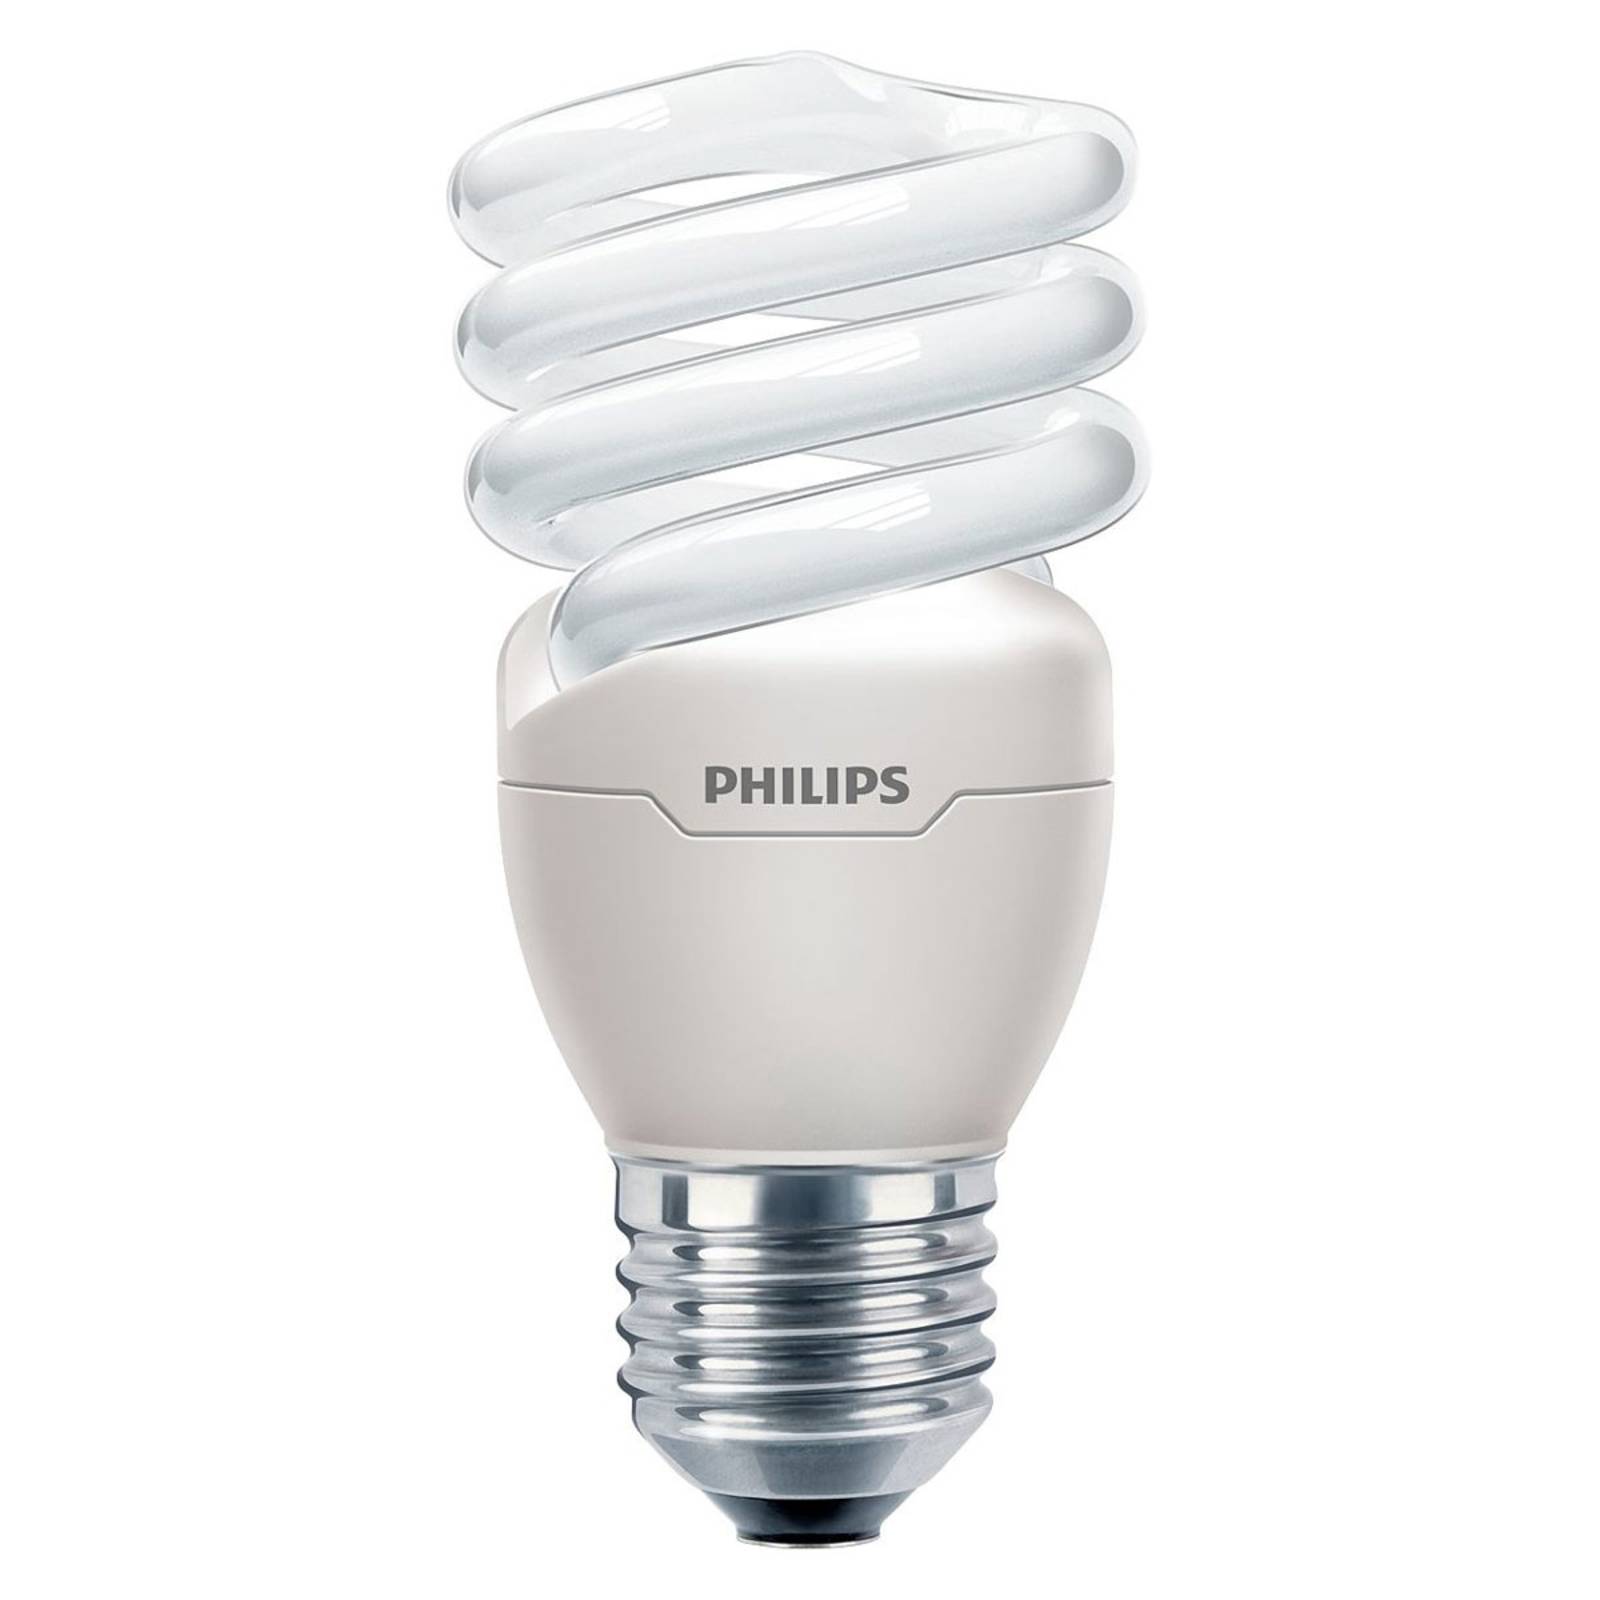 Philips E27 spaarlamp Tornado Performance van 15W, 827 online kopen